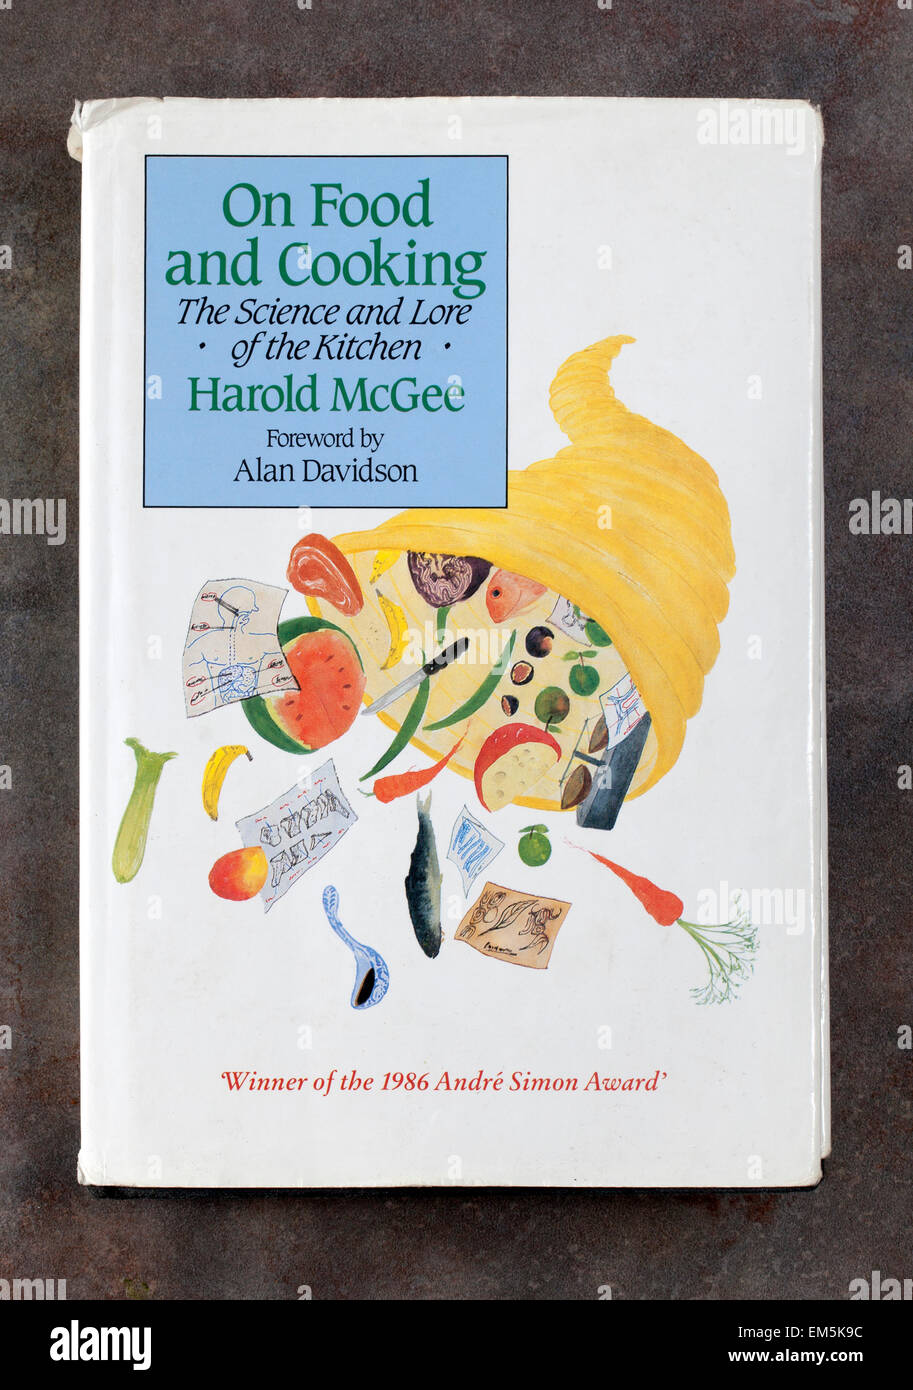 Eine Kopie des "On Food and Cooking" von Harold McGee - Hardcover-Buch Stockfoto